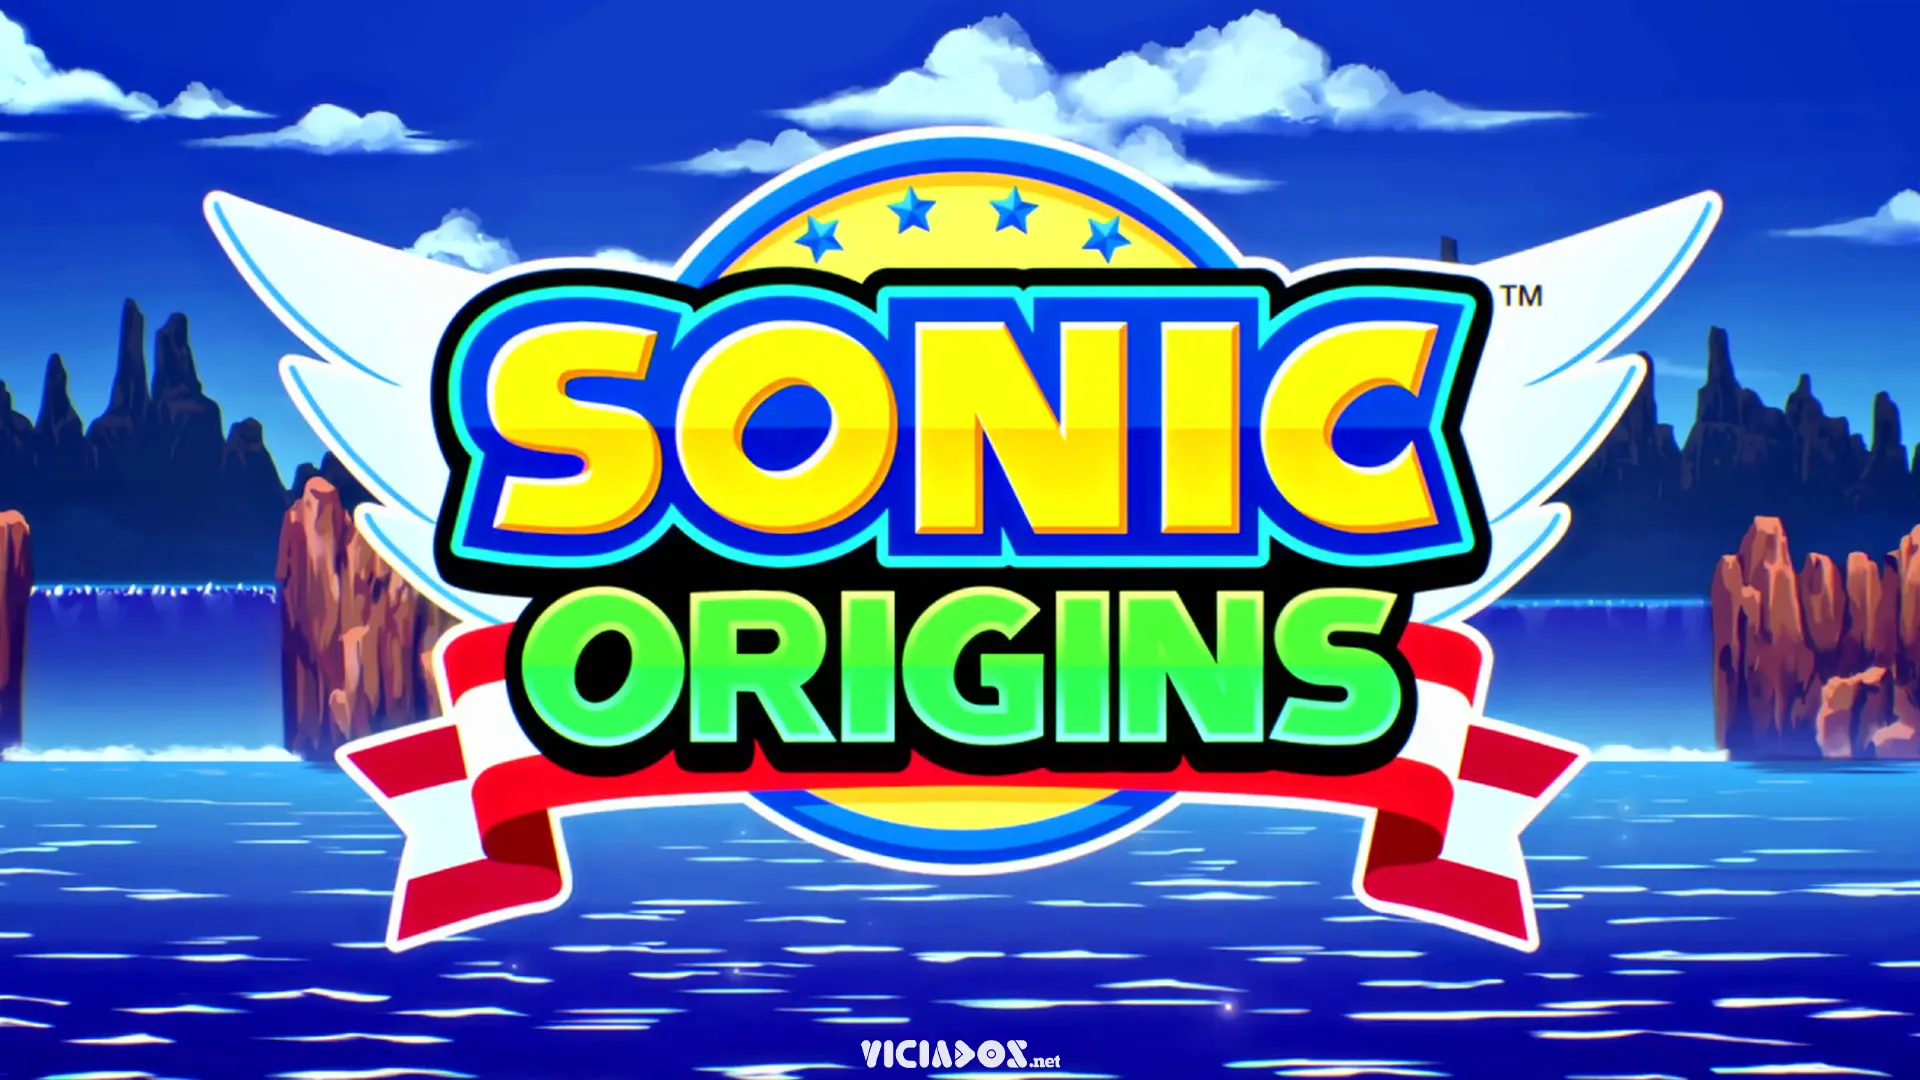 Que tal voltar um pouco no tempo em Sonic Origins? Confira a análise da Viciados.